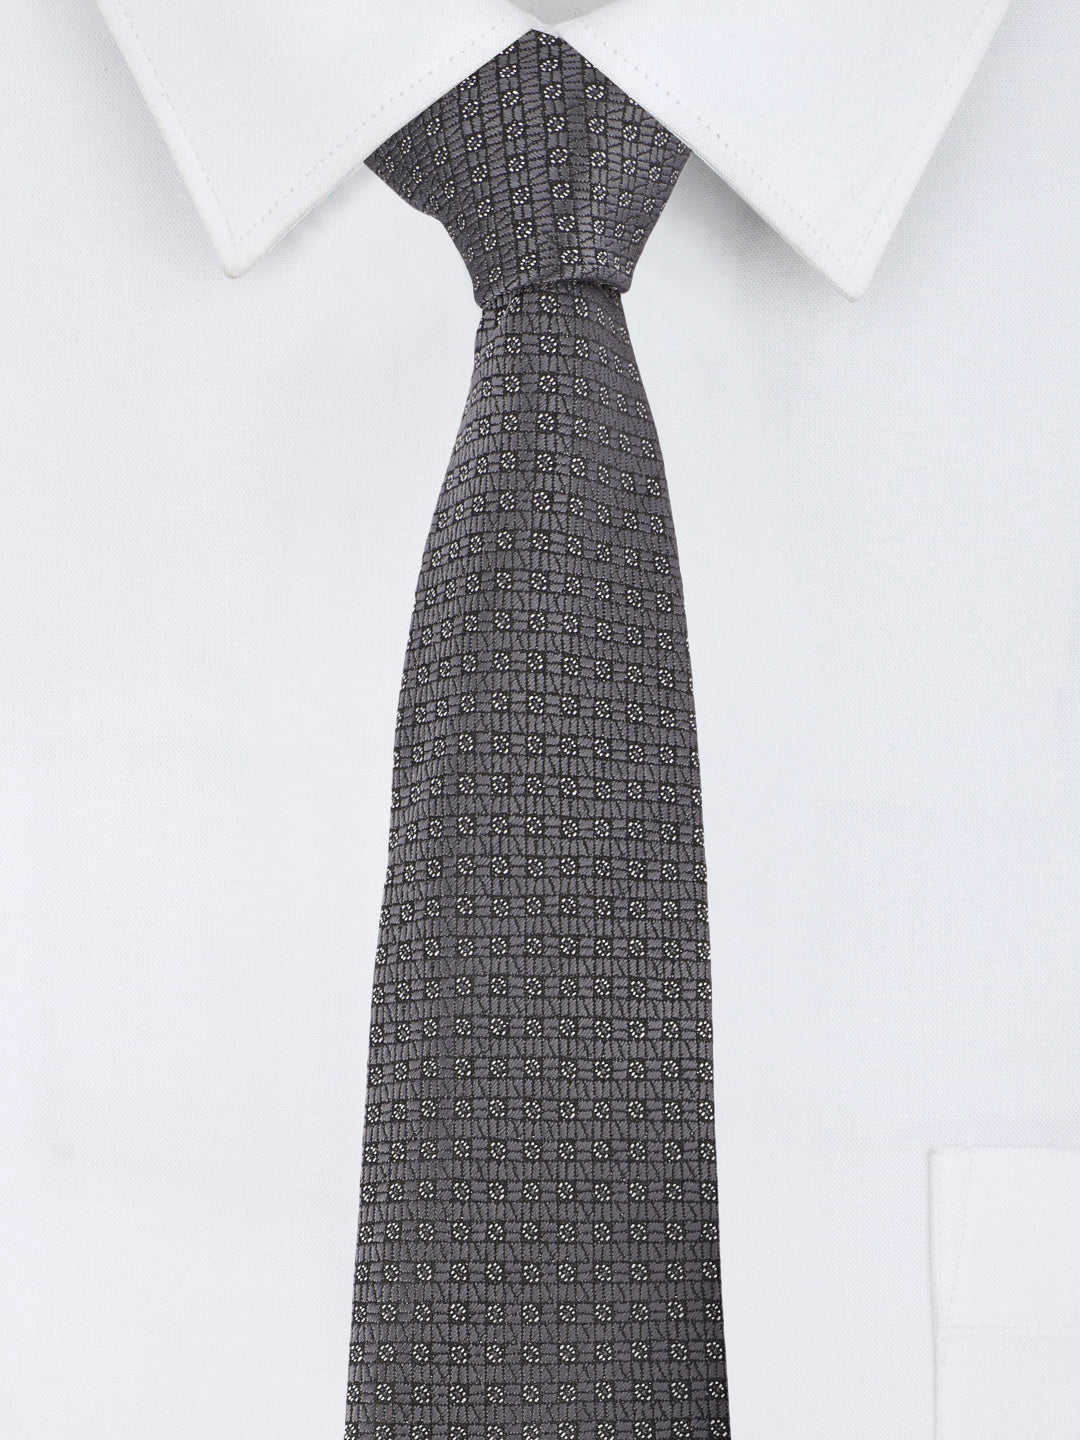 Alvaro Castagnino Microfiber GREY  Colored Necktie for Men